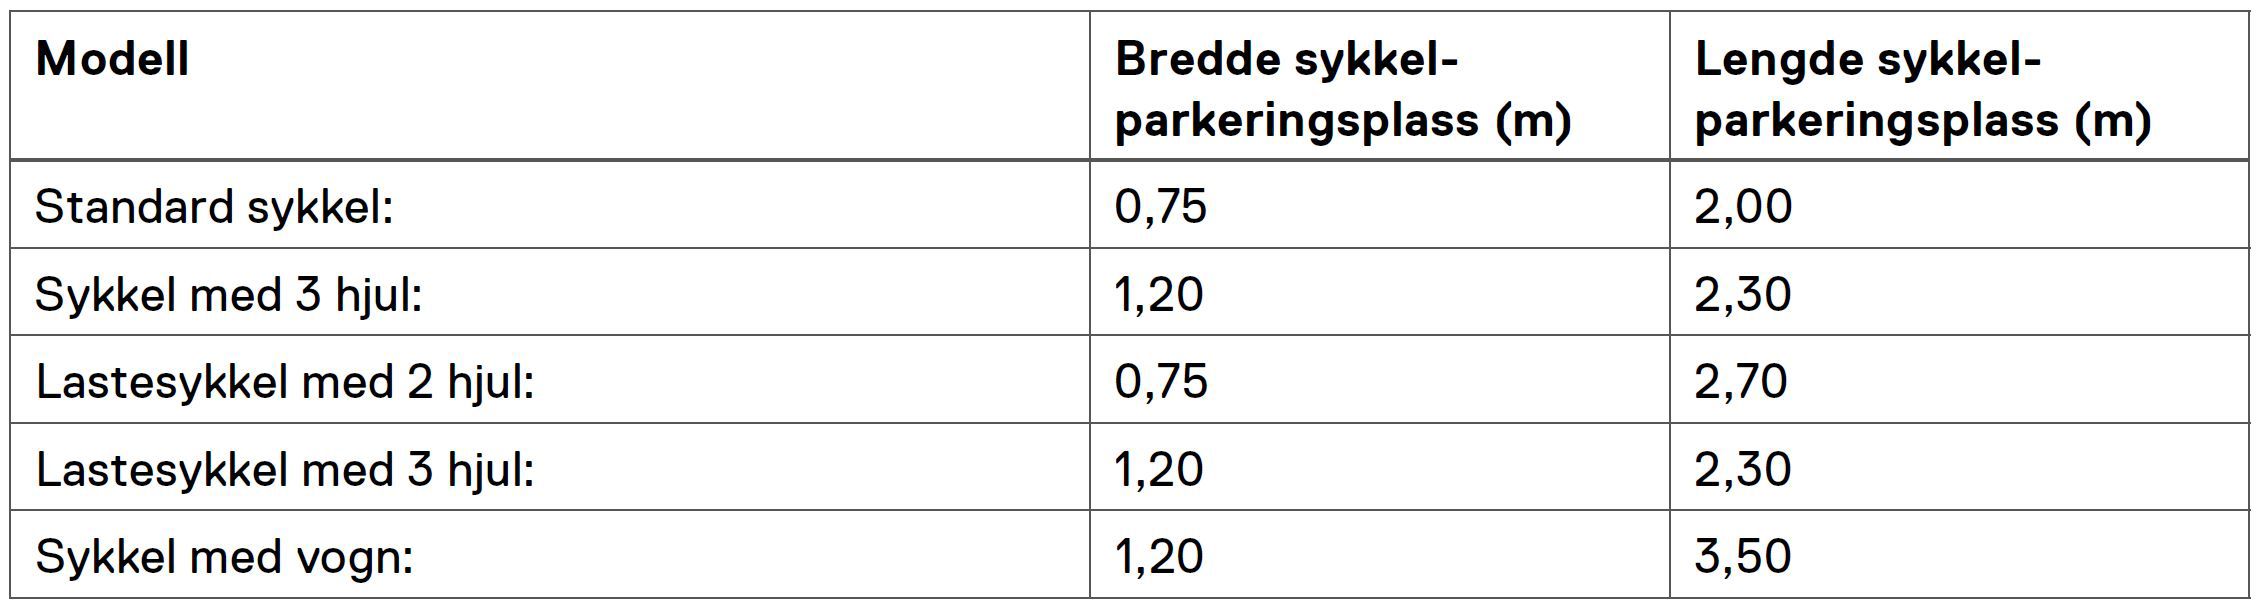 Tabellen gir opplysninger om hvor bredd og langt en sykkelparkeringsplass for forskjellige typer sykler skulle være.